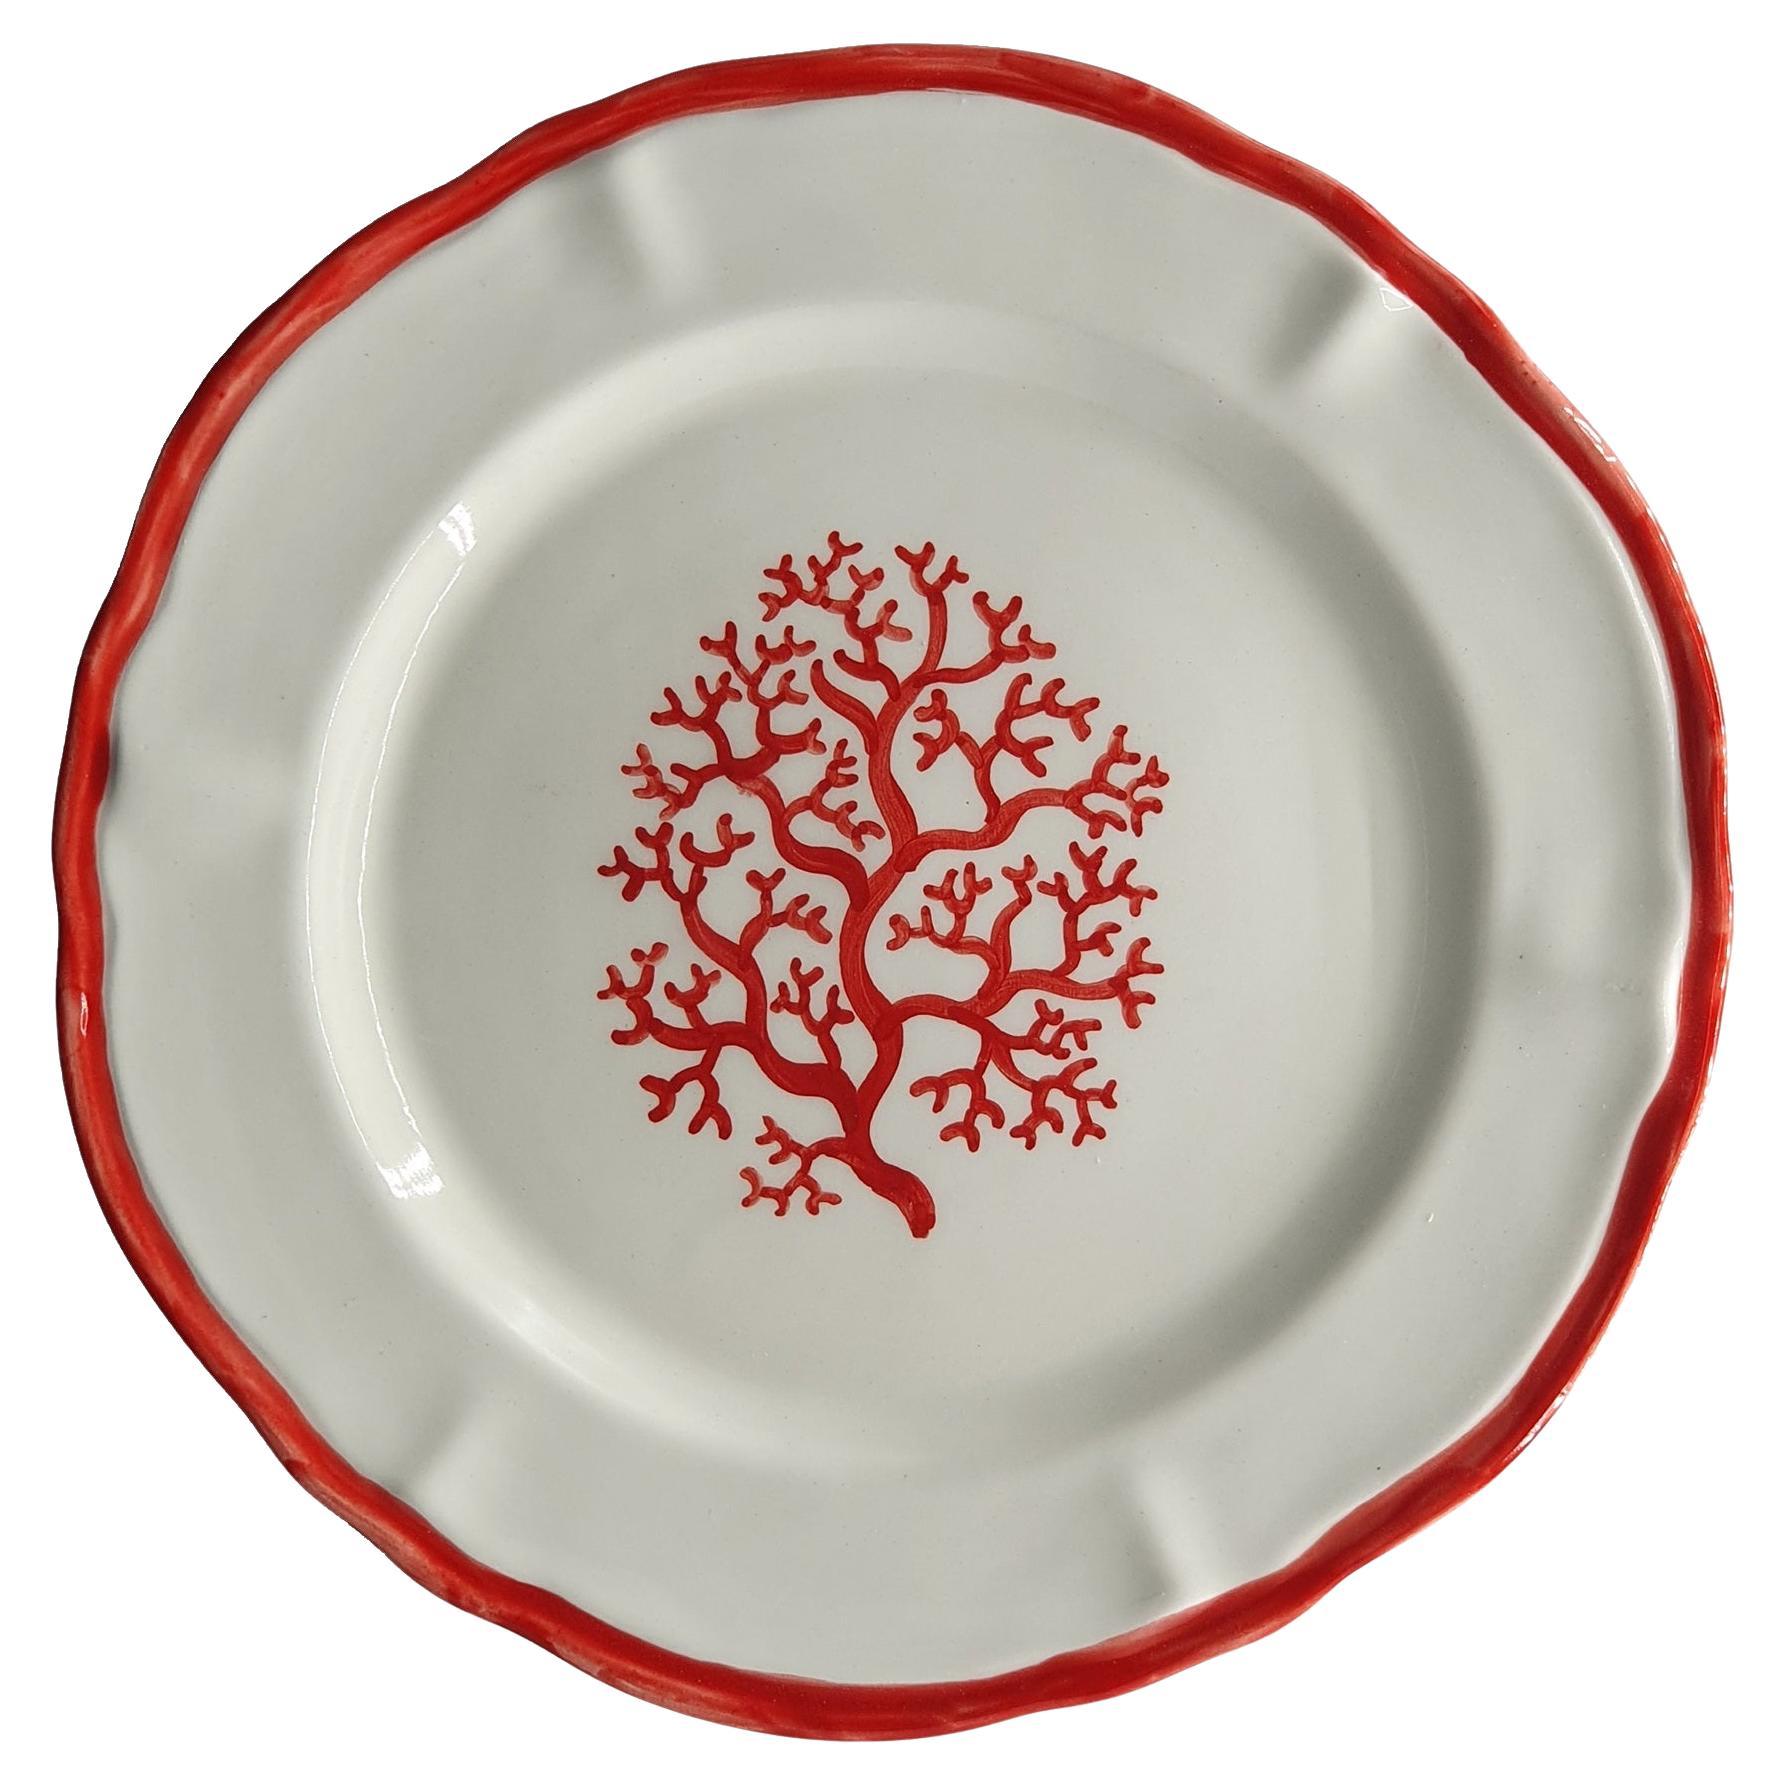 Handapainted Coral ceramic dessert plates